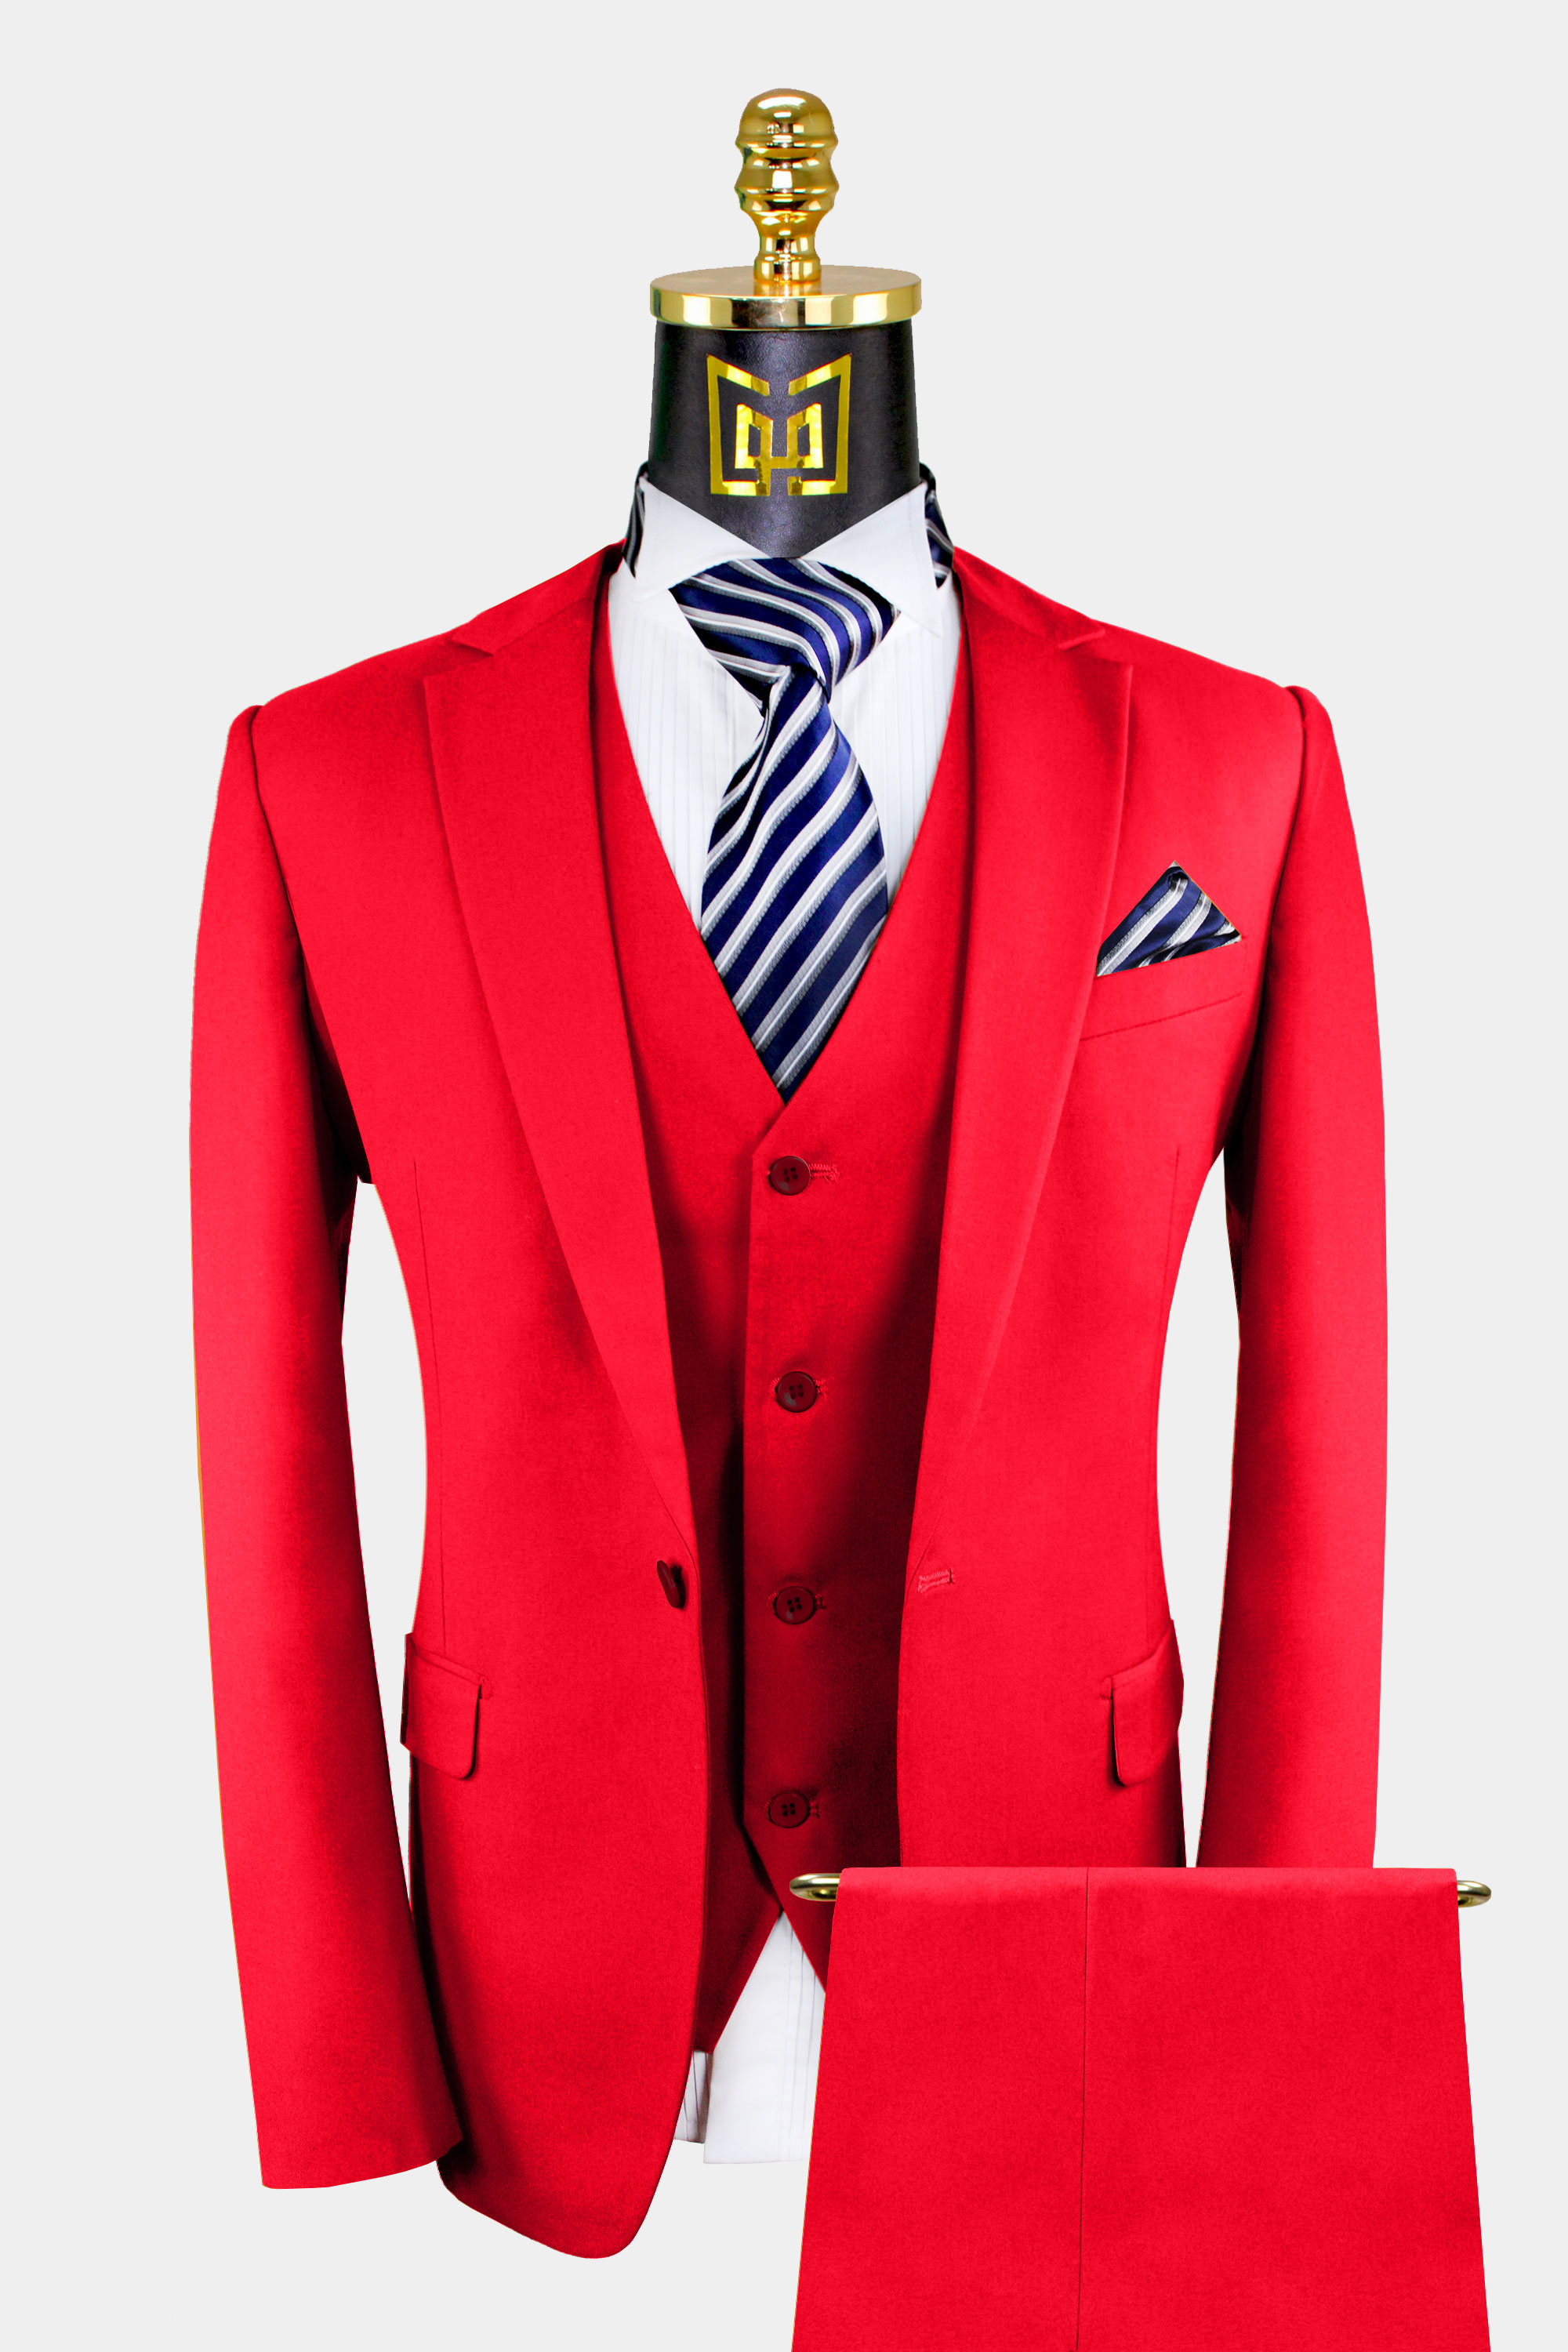 Mens-All-Red-Suit-3-Piece-from-Gentlemansguru.com